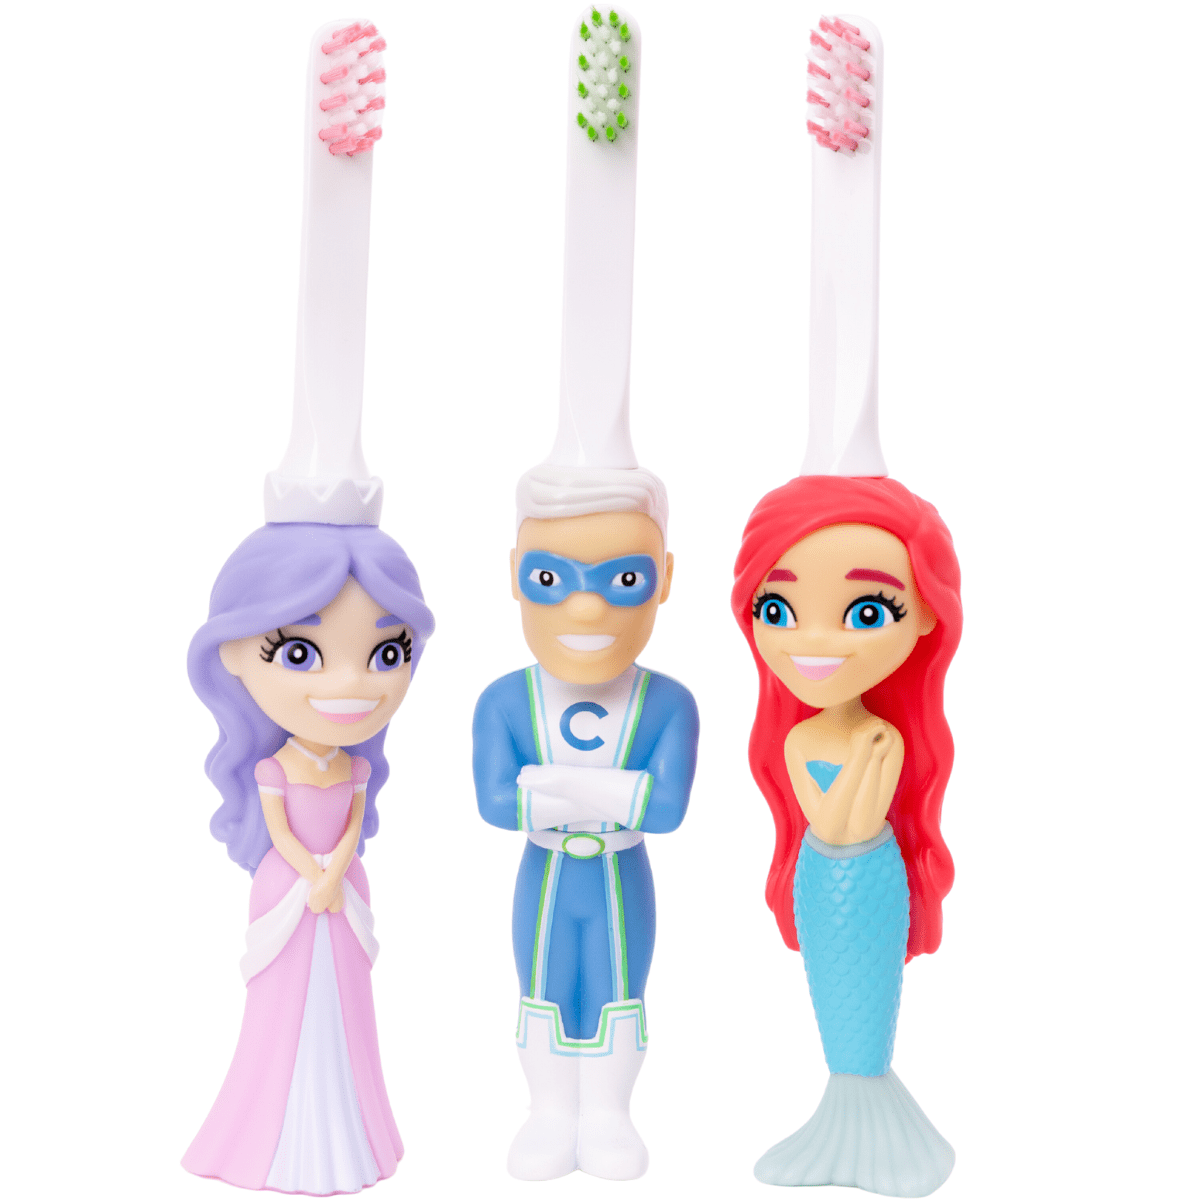 Mermaid Princess and Superhero Toothbrush Toys